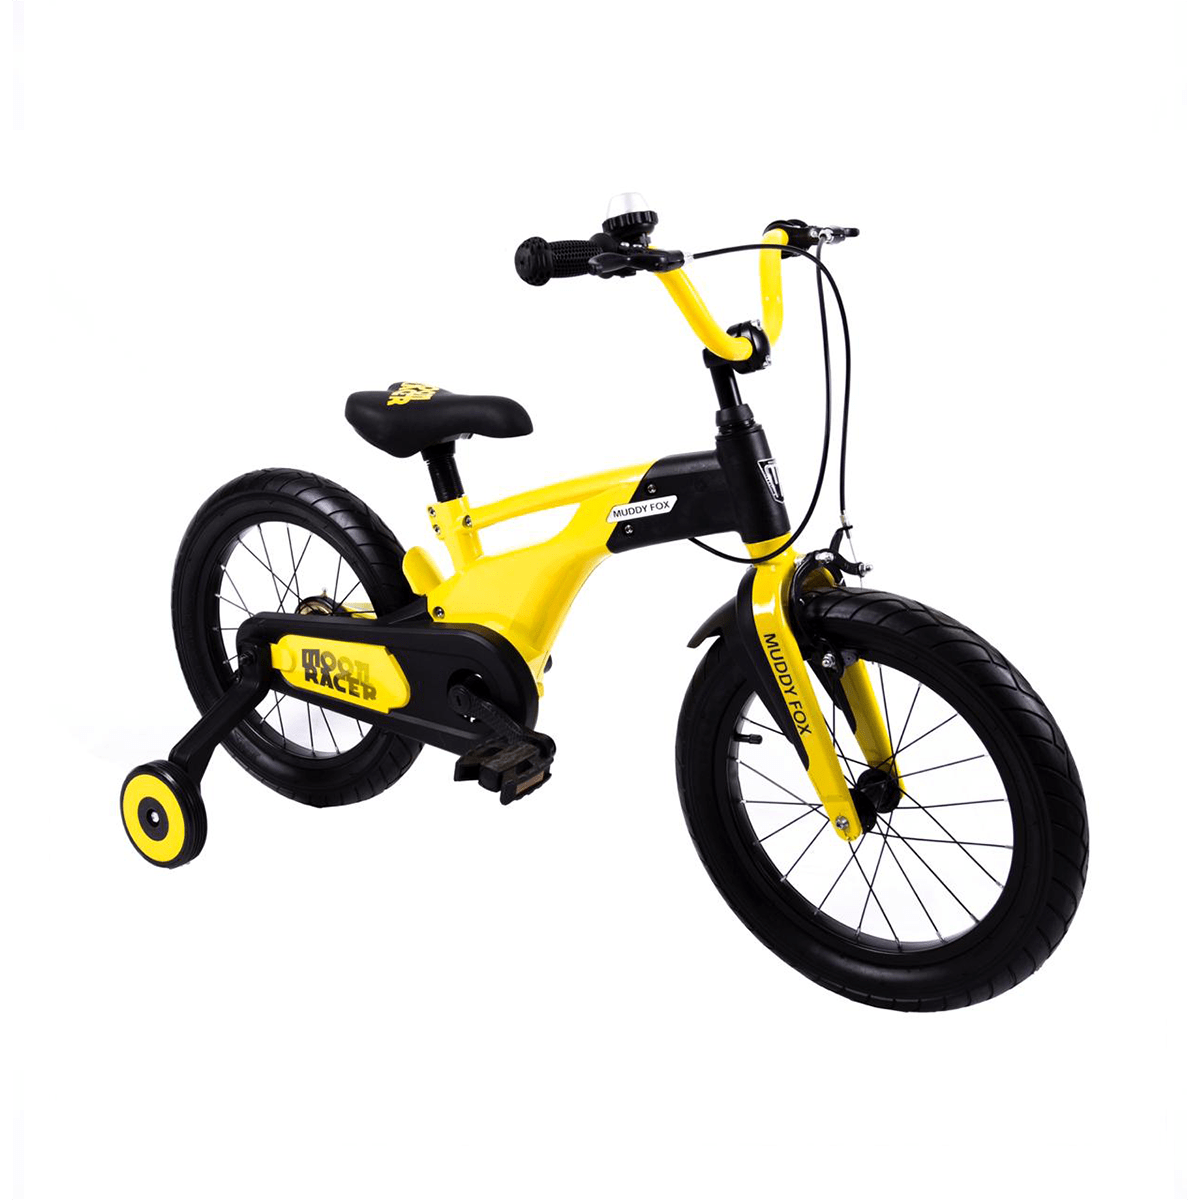 F600 Kids Bike 16 Inch - Little Angel (Yellow)